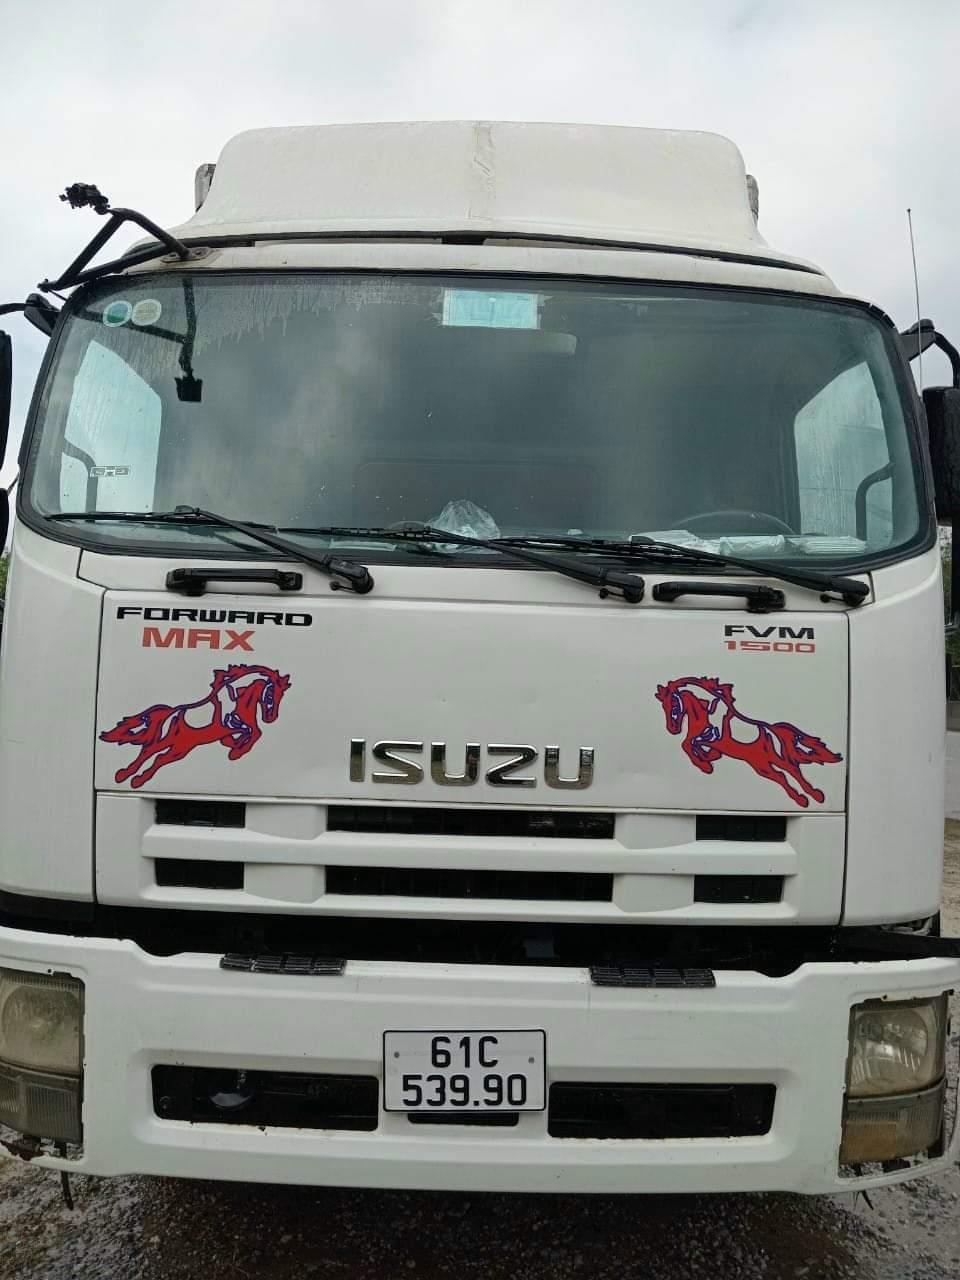 Bán xe Izuzu đời 2010 tải 15t thùng kín dài 8.1m cao 2m53... 1392308